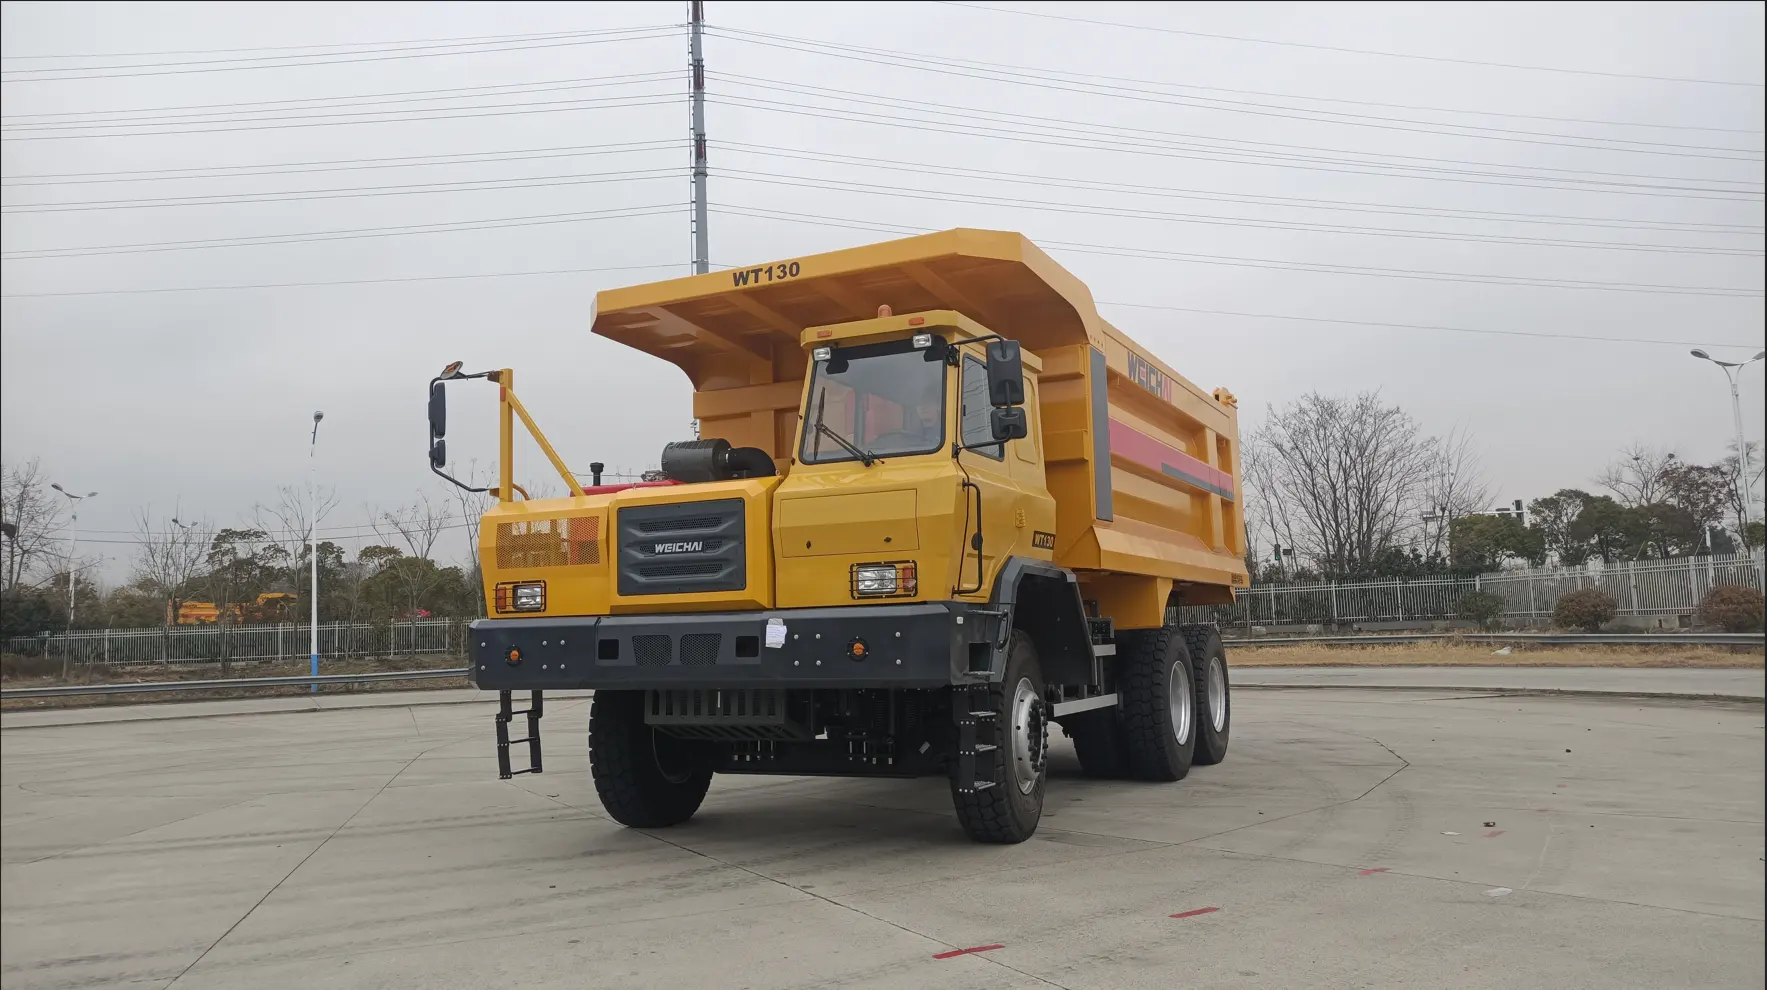 HanPei costruzione di alta qualità, affidabile e durevole LT130 camion minerari 130ton per la vendita a buon mercato